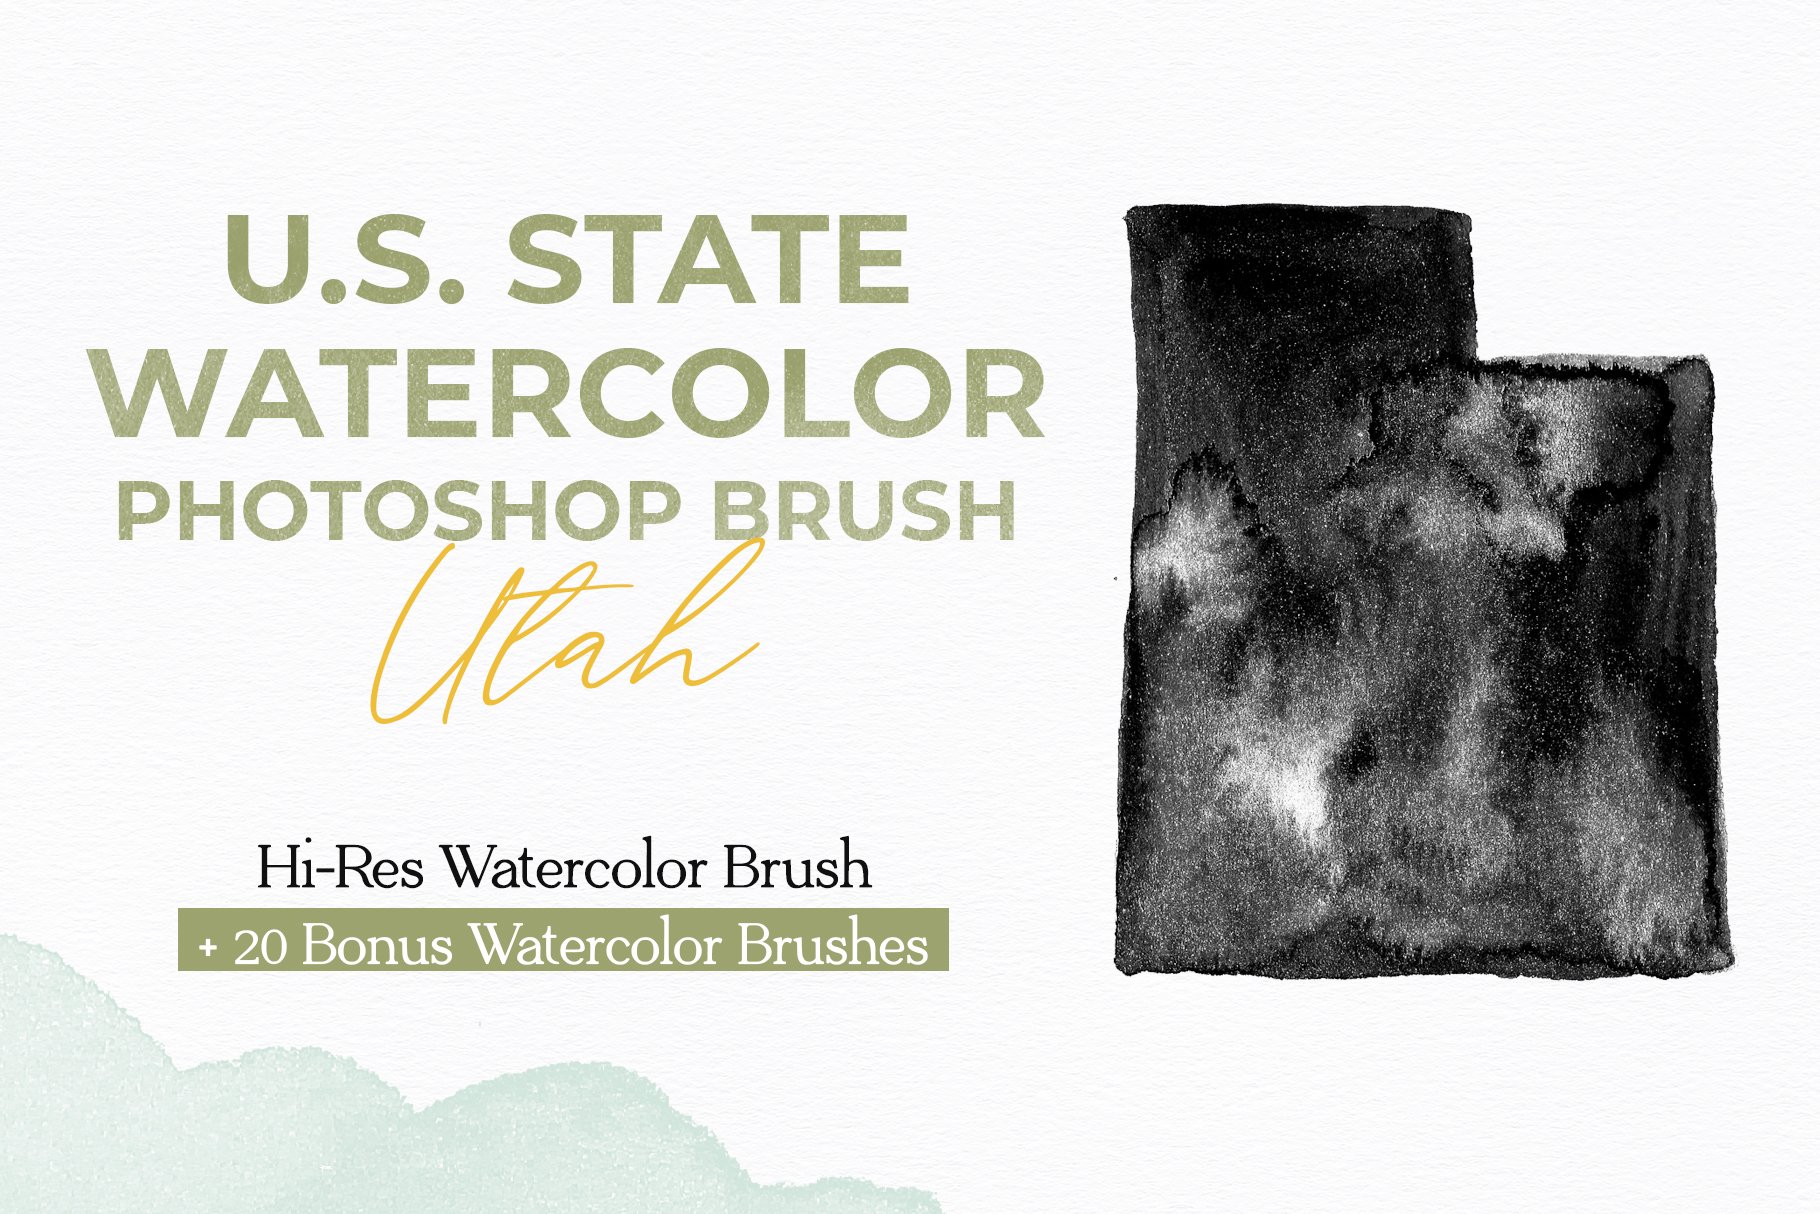 Utah US Watercolor PS Brushcover image.